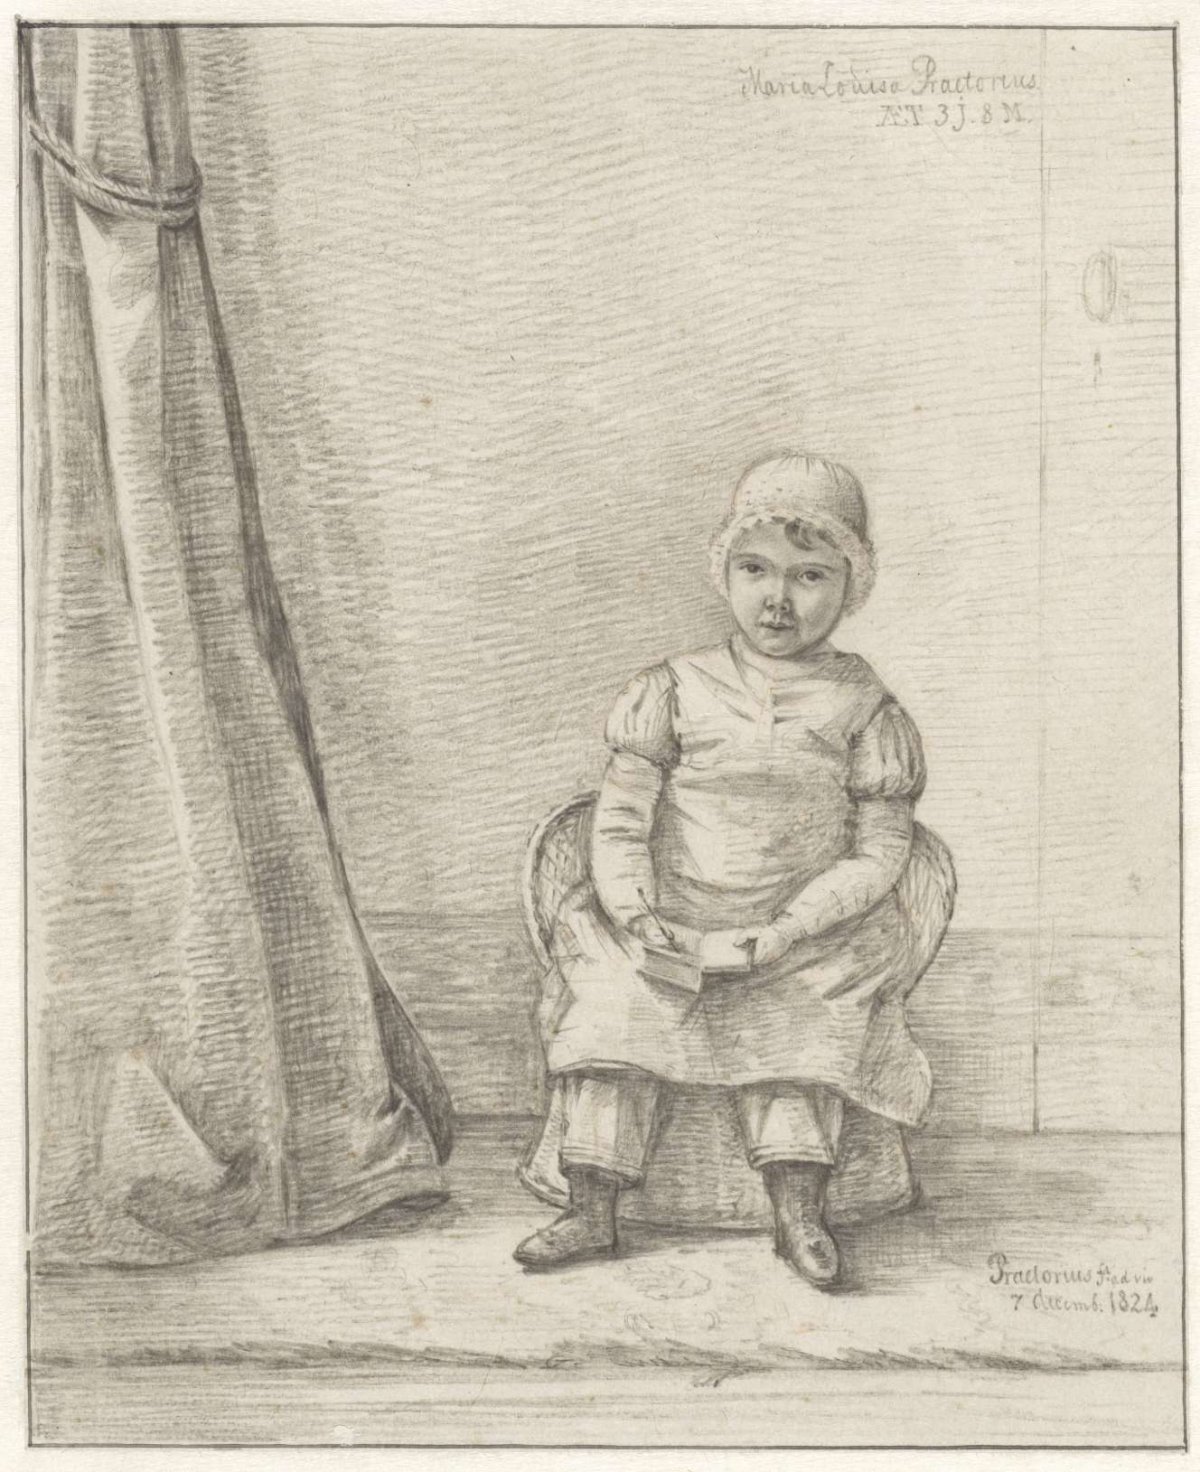 Portrait of Maria Louisa Praetorius as a child, Pieter Ernst Hendrik Praetorius, 1824